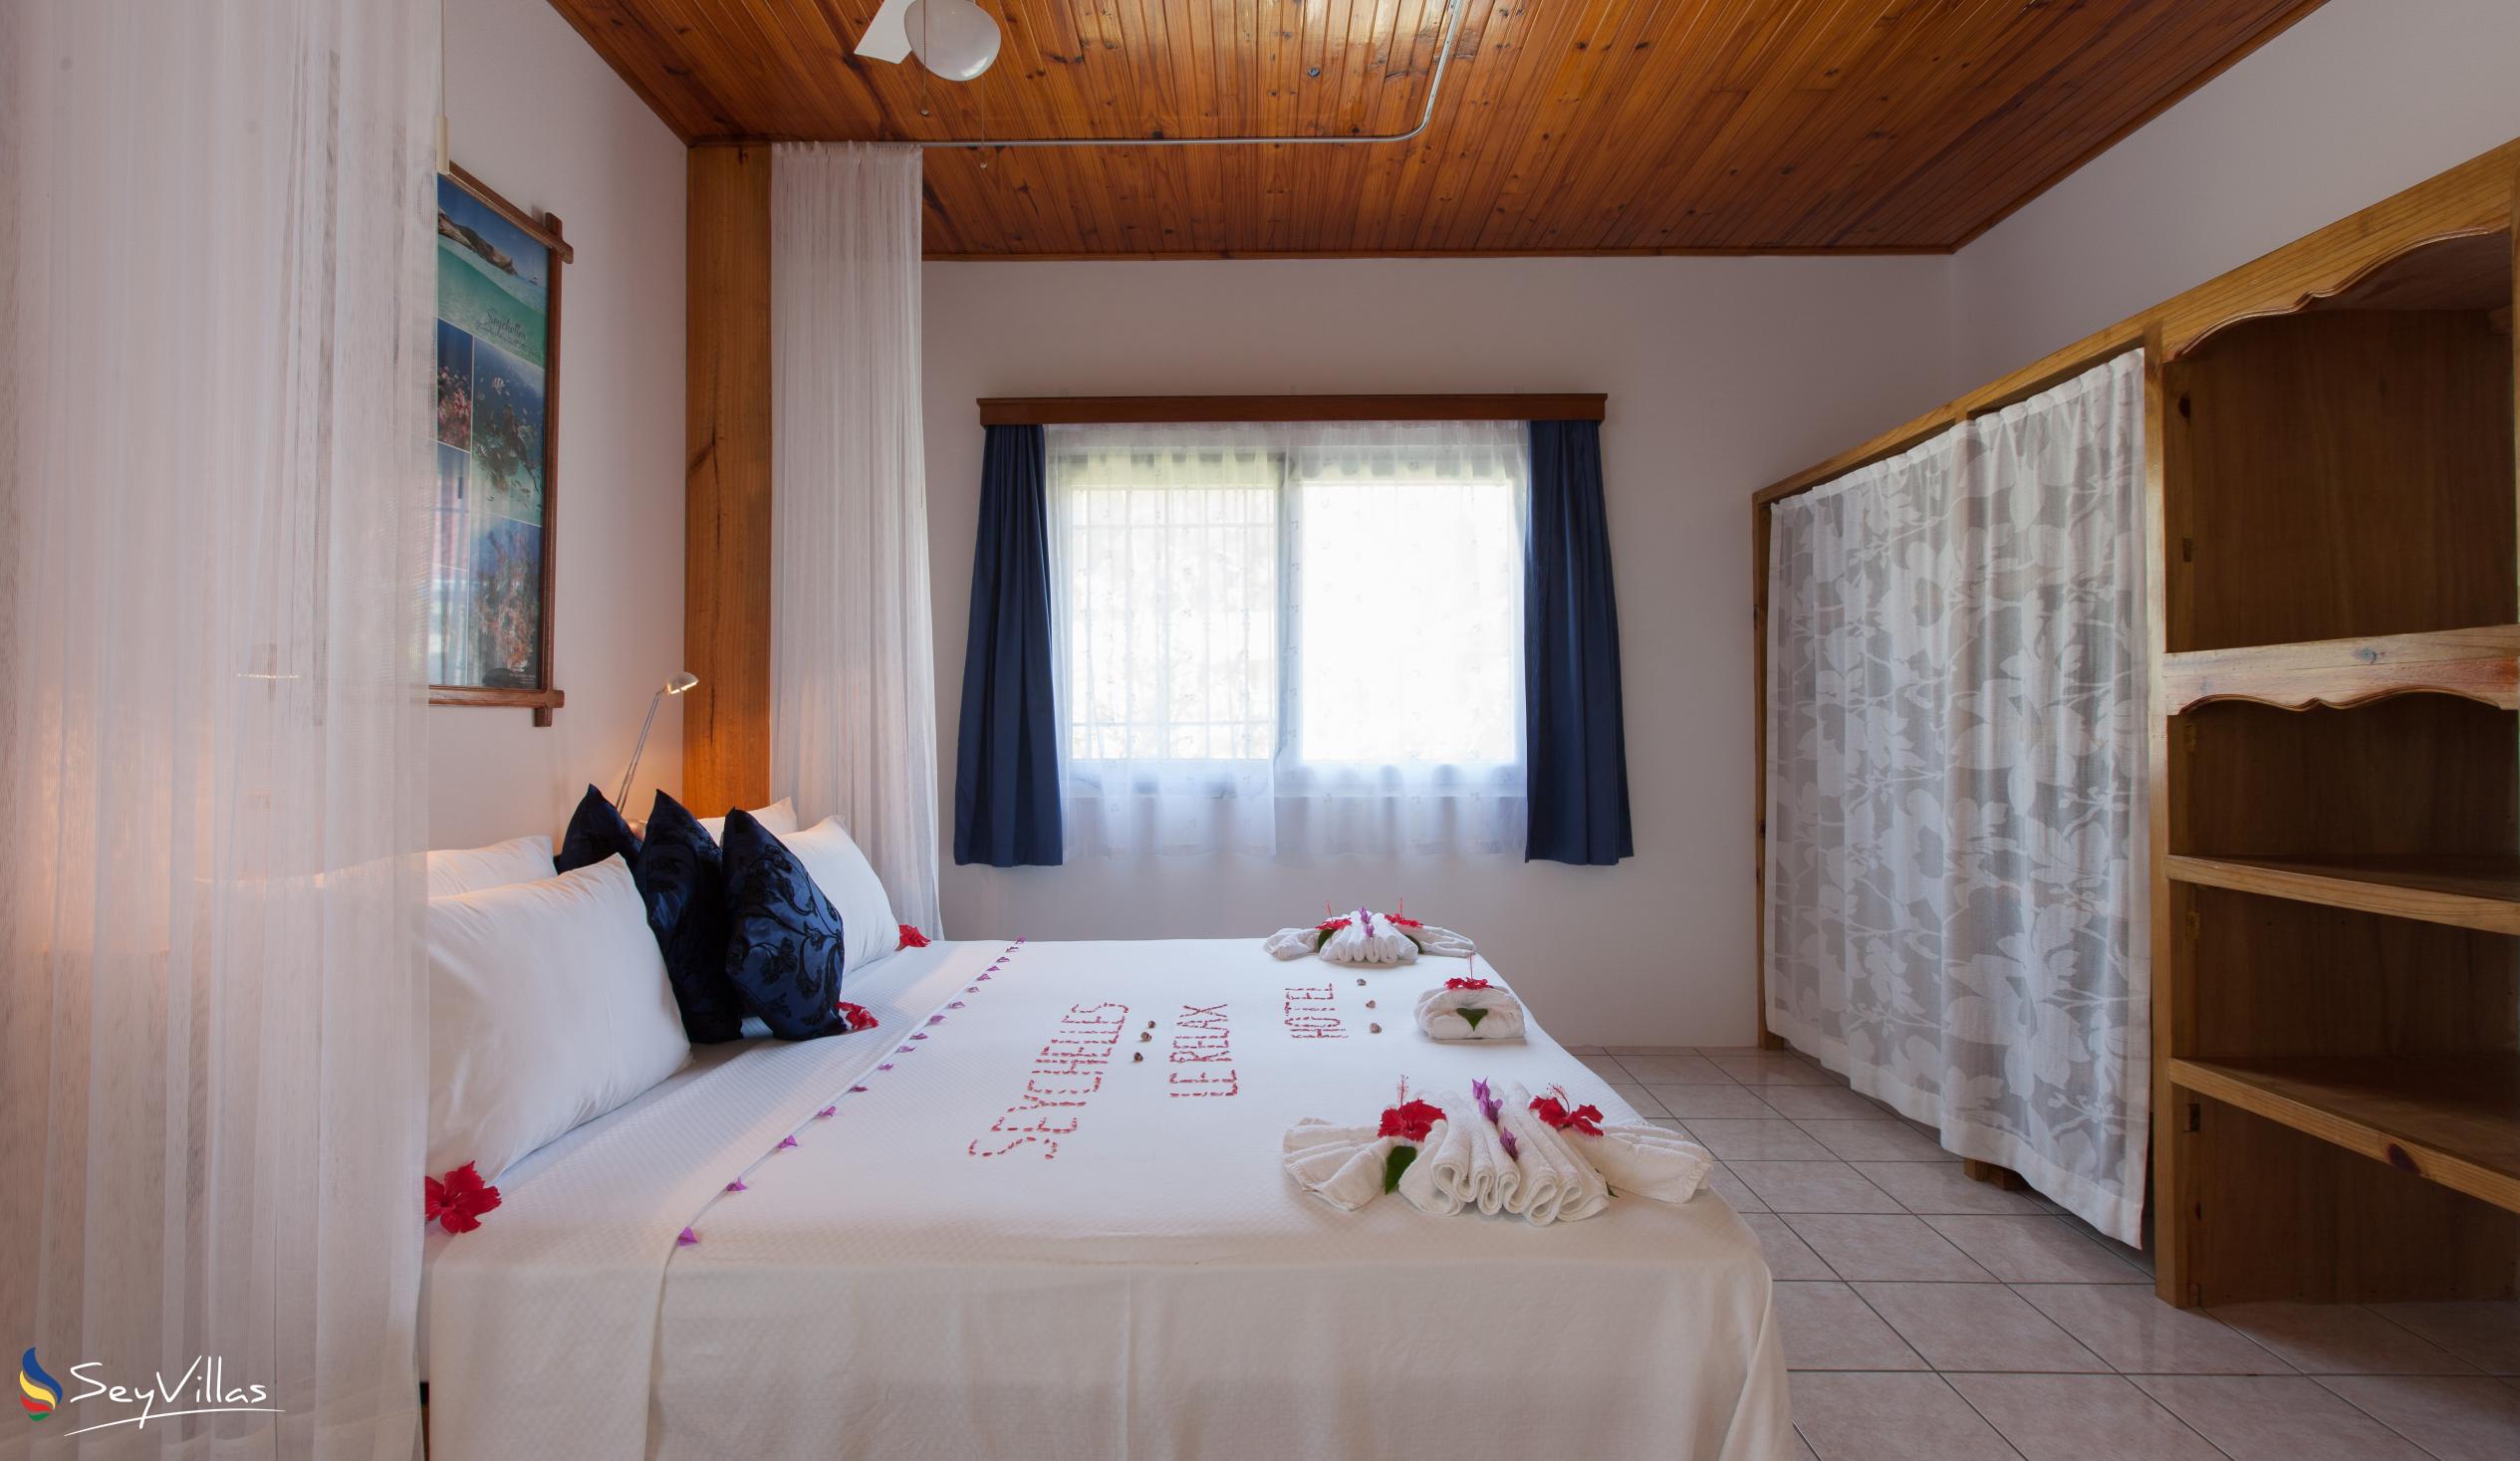 Foto 46: Le Relax St. Joseph Guest House - Chambre Familiale - Praslin (Seychelles)